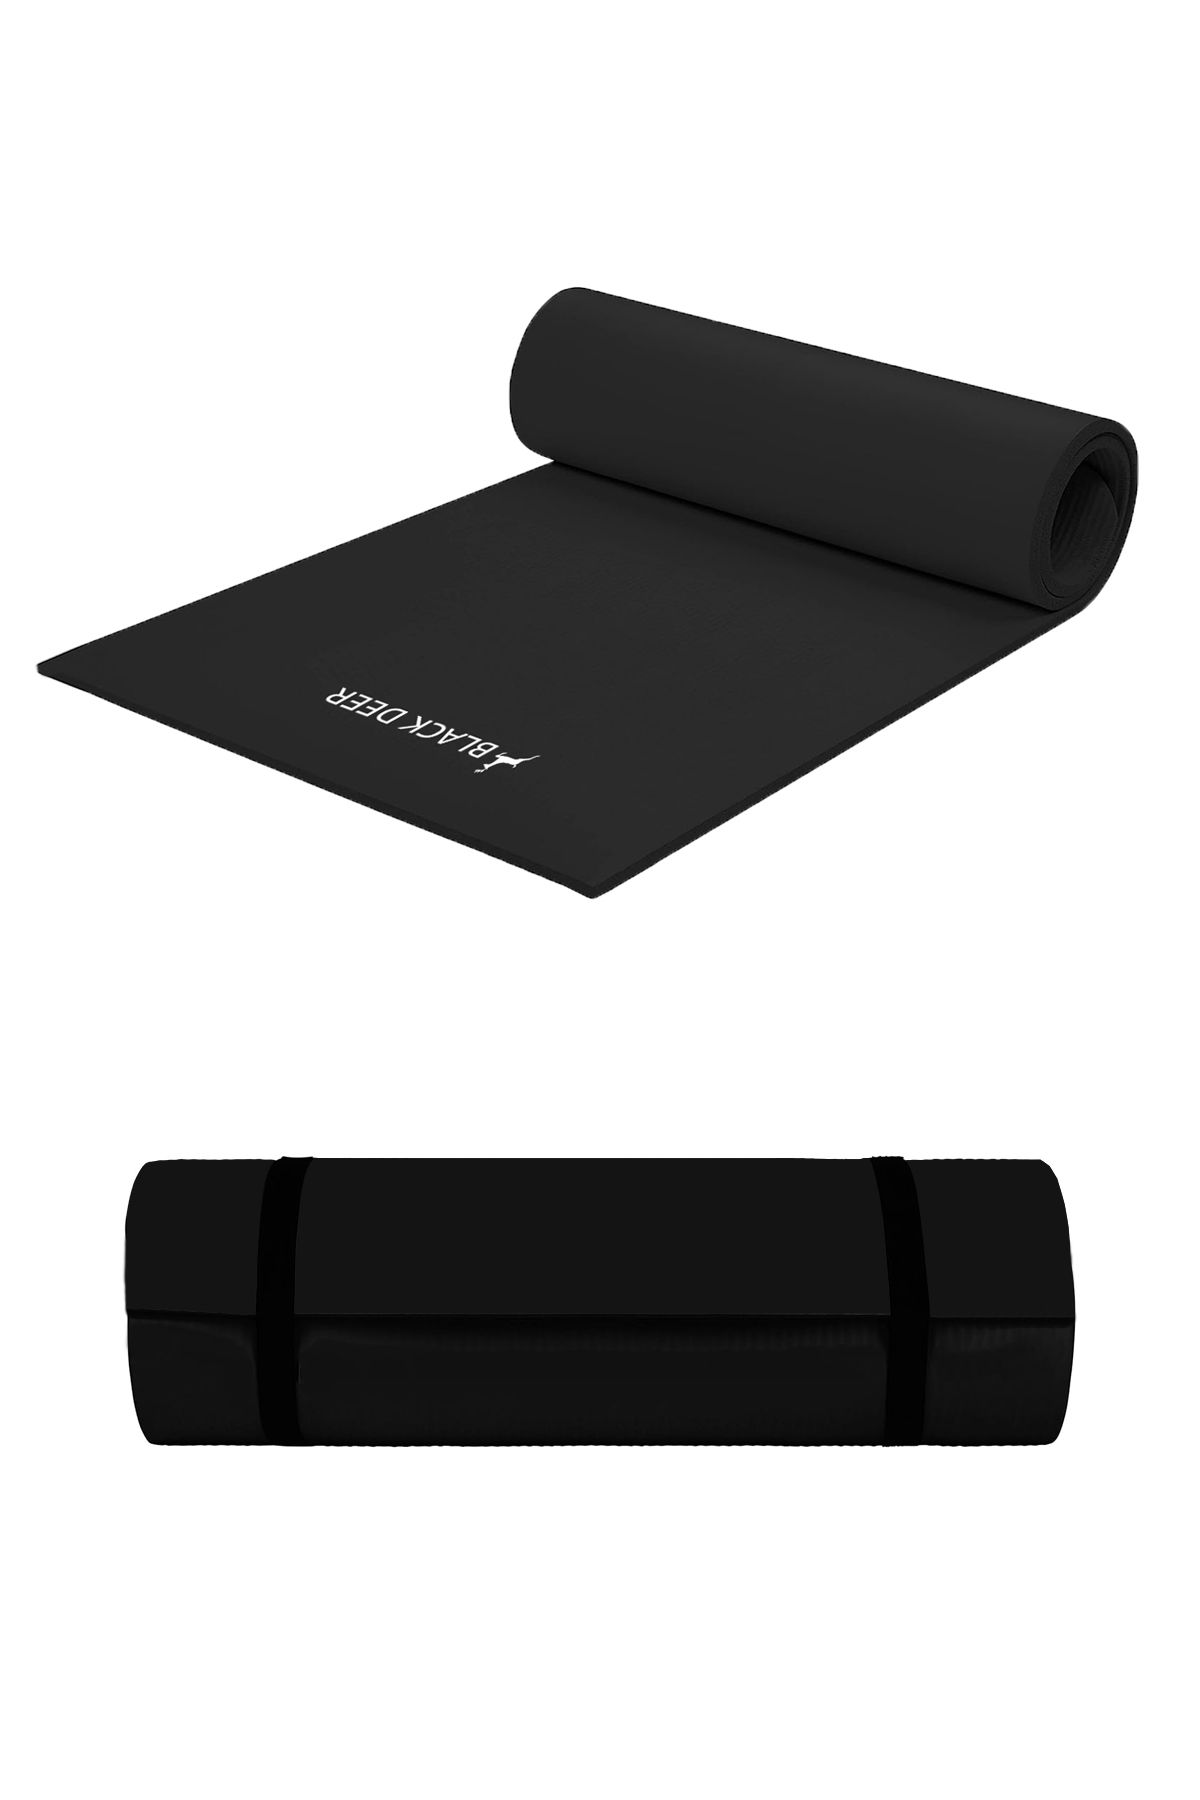 BLACK DEER Pilates Yoga Kamp Matı Egzersiz Minderi Kaymaz Taban 180x55 cm 8mm